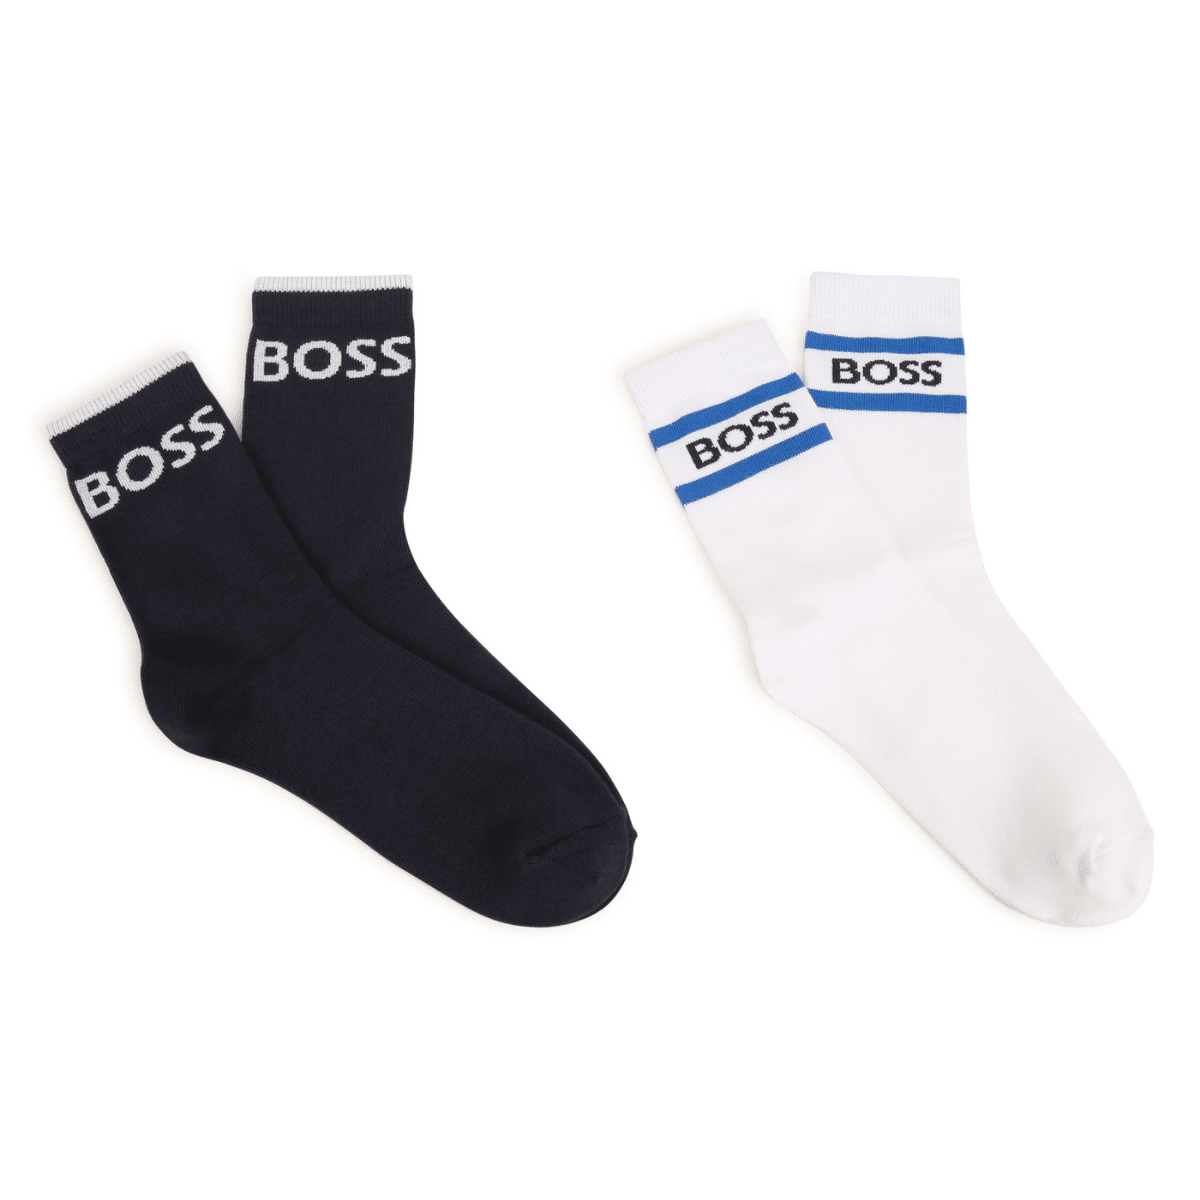 boss boys pair of socks